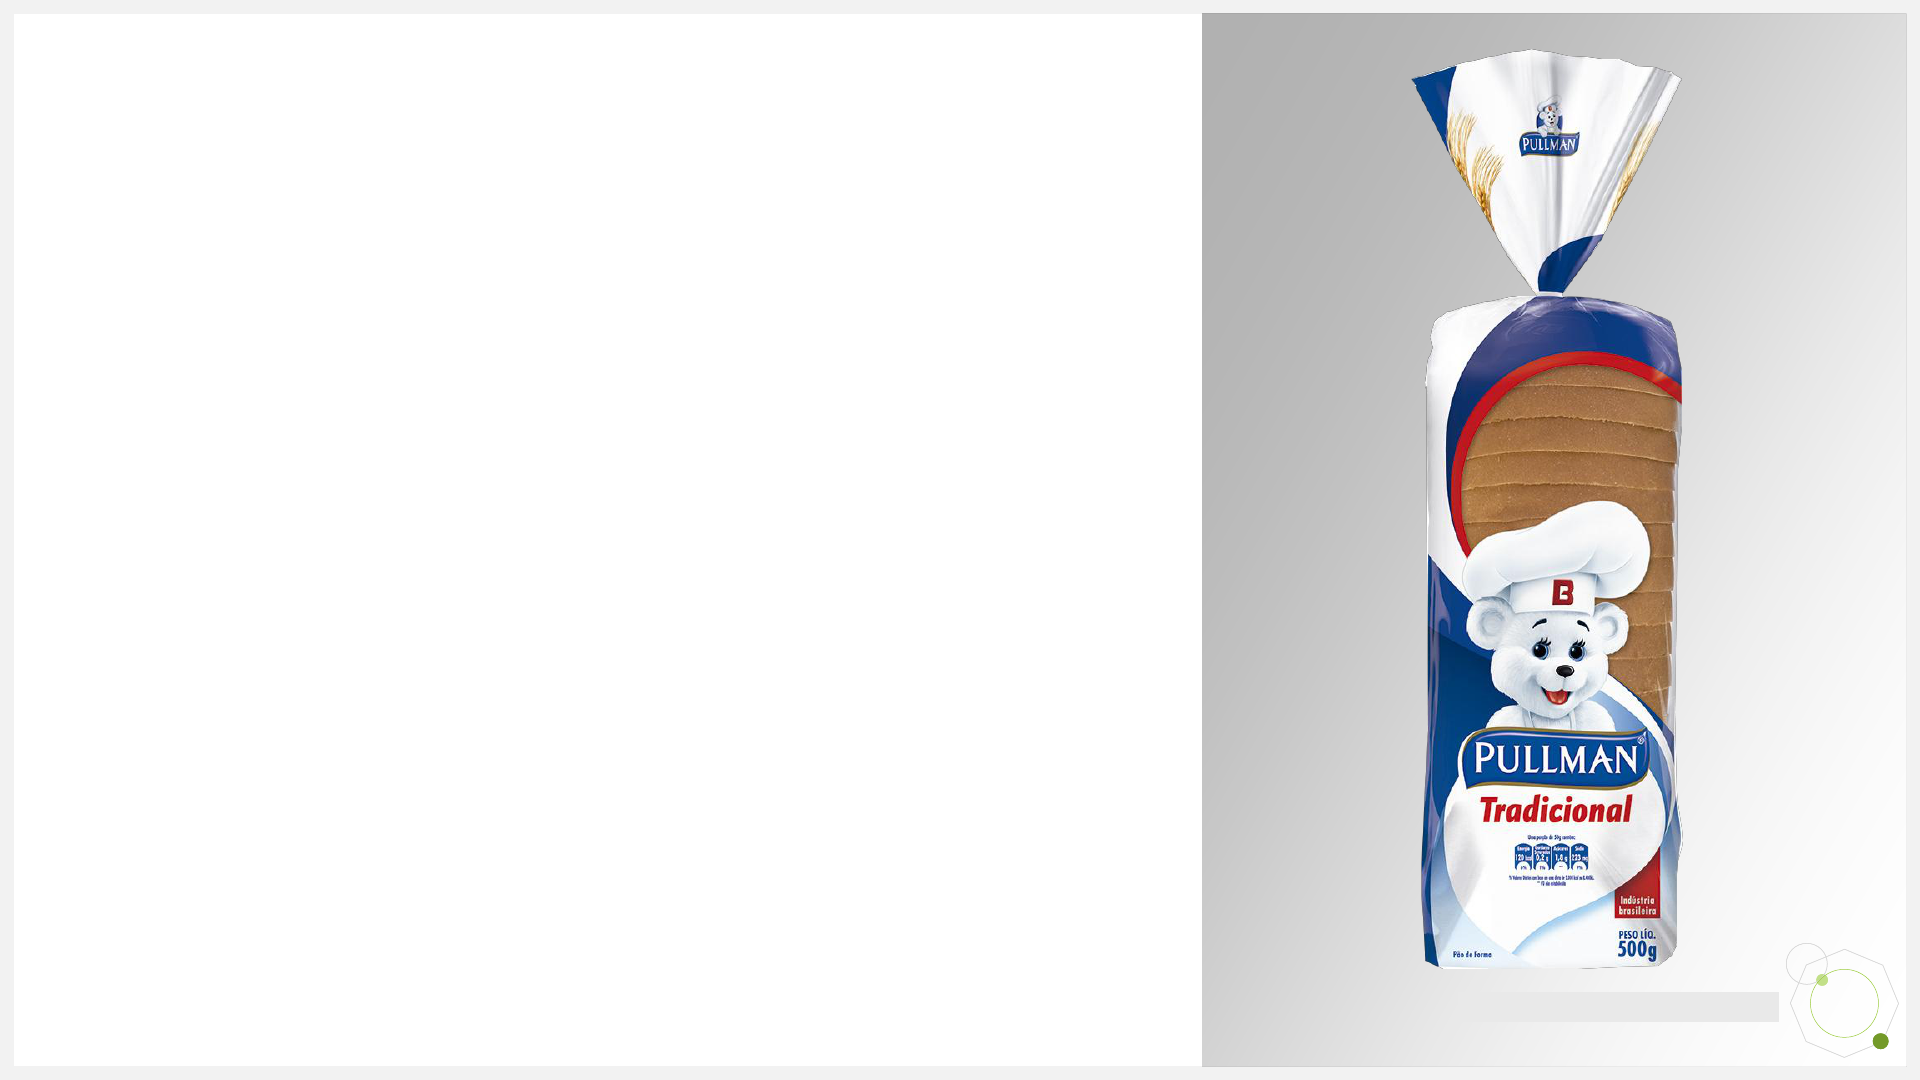 Pepsico é multada em R$ 420 mil por toddynho com detergente